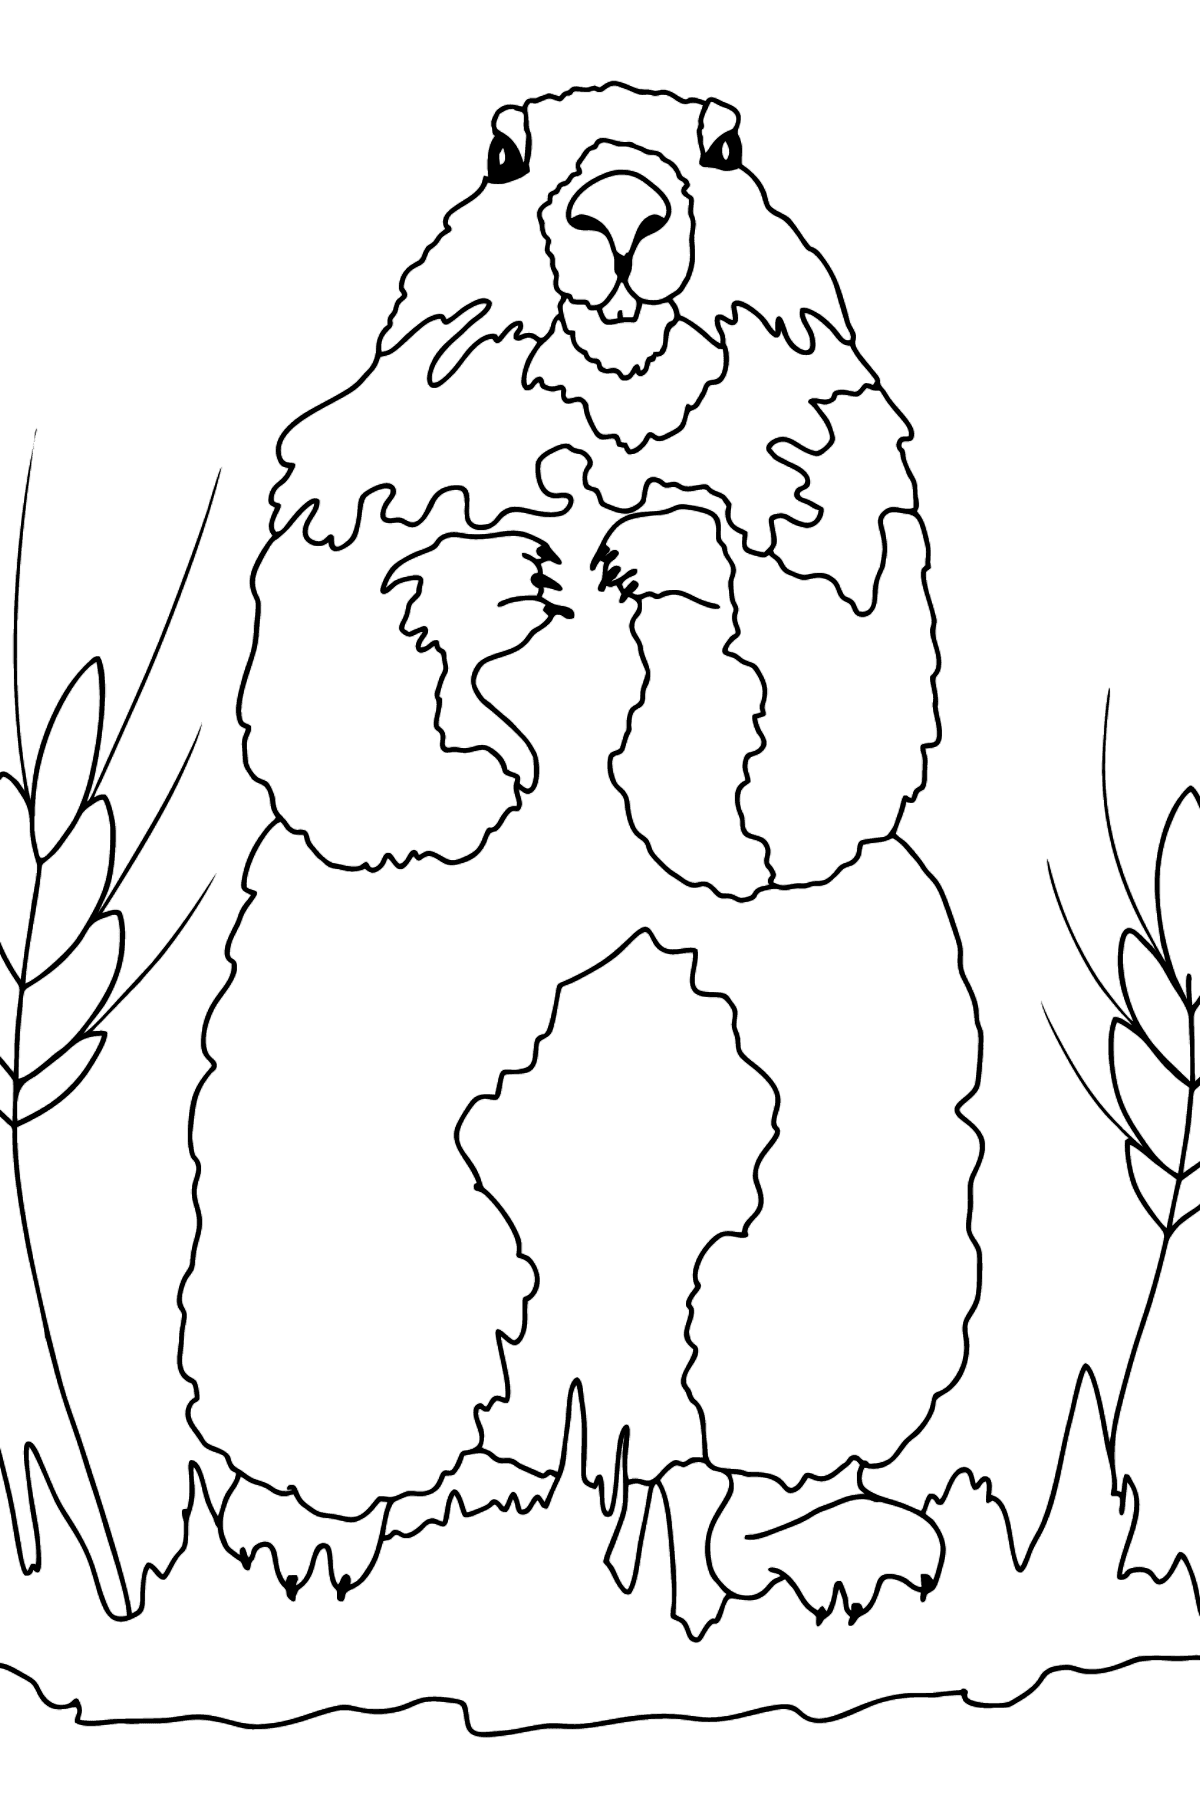 Tegning til farvning murmeldyr (vanskeligt) - Tegninger til farvelægning for børn